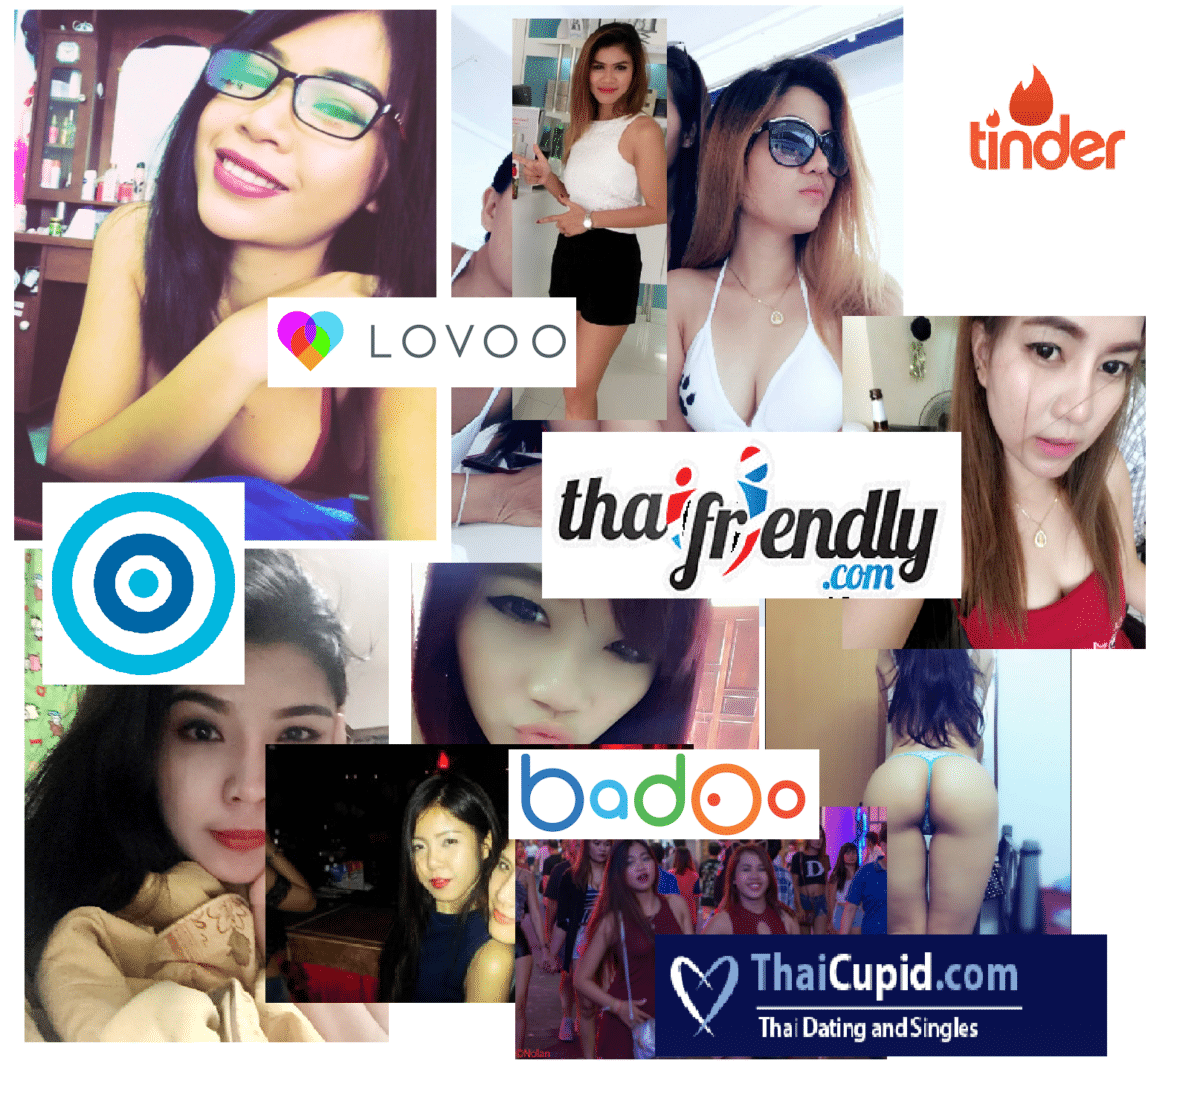 Online hookup sites in Bangkok